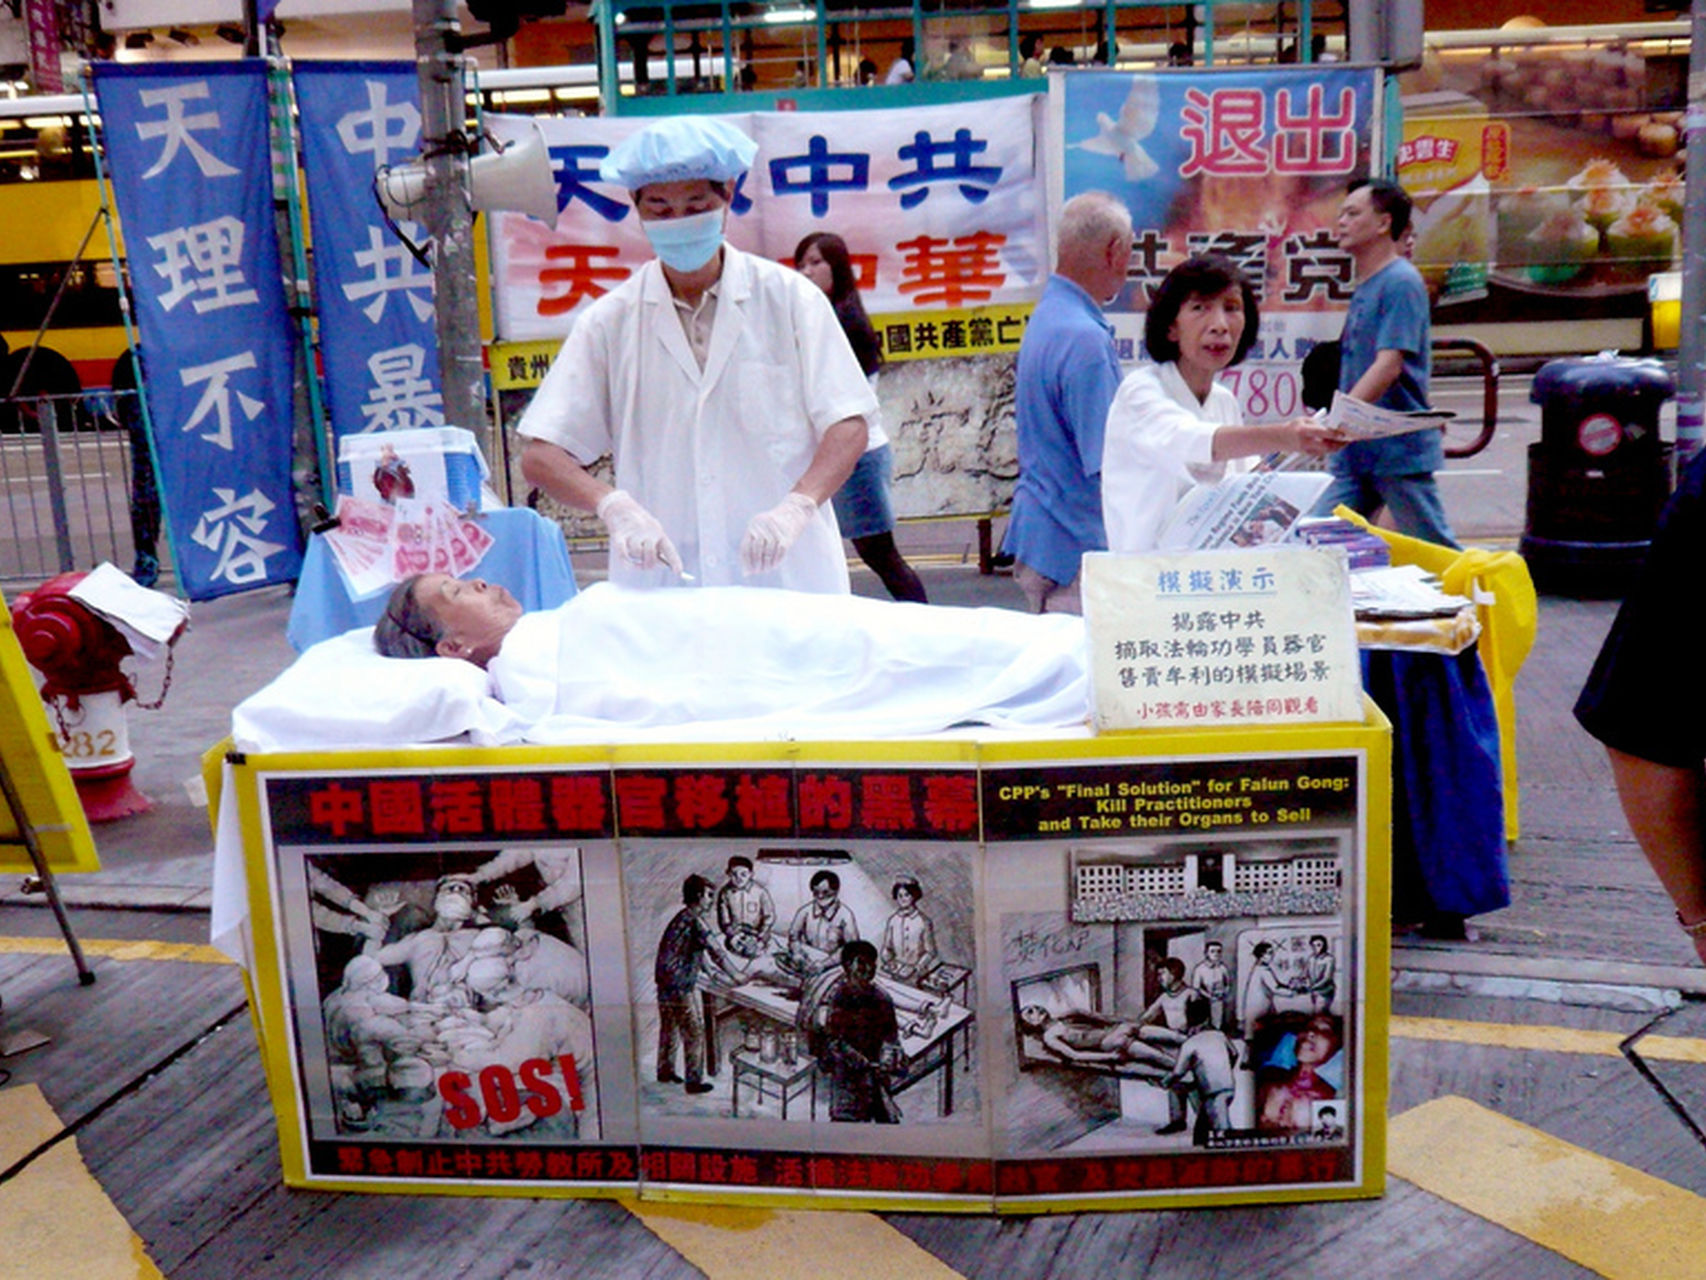 protesta de fulan gong por trafico de organos